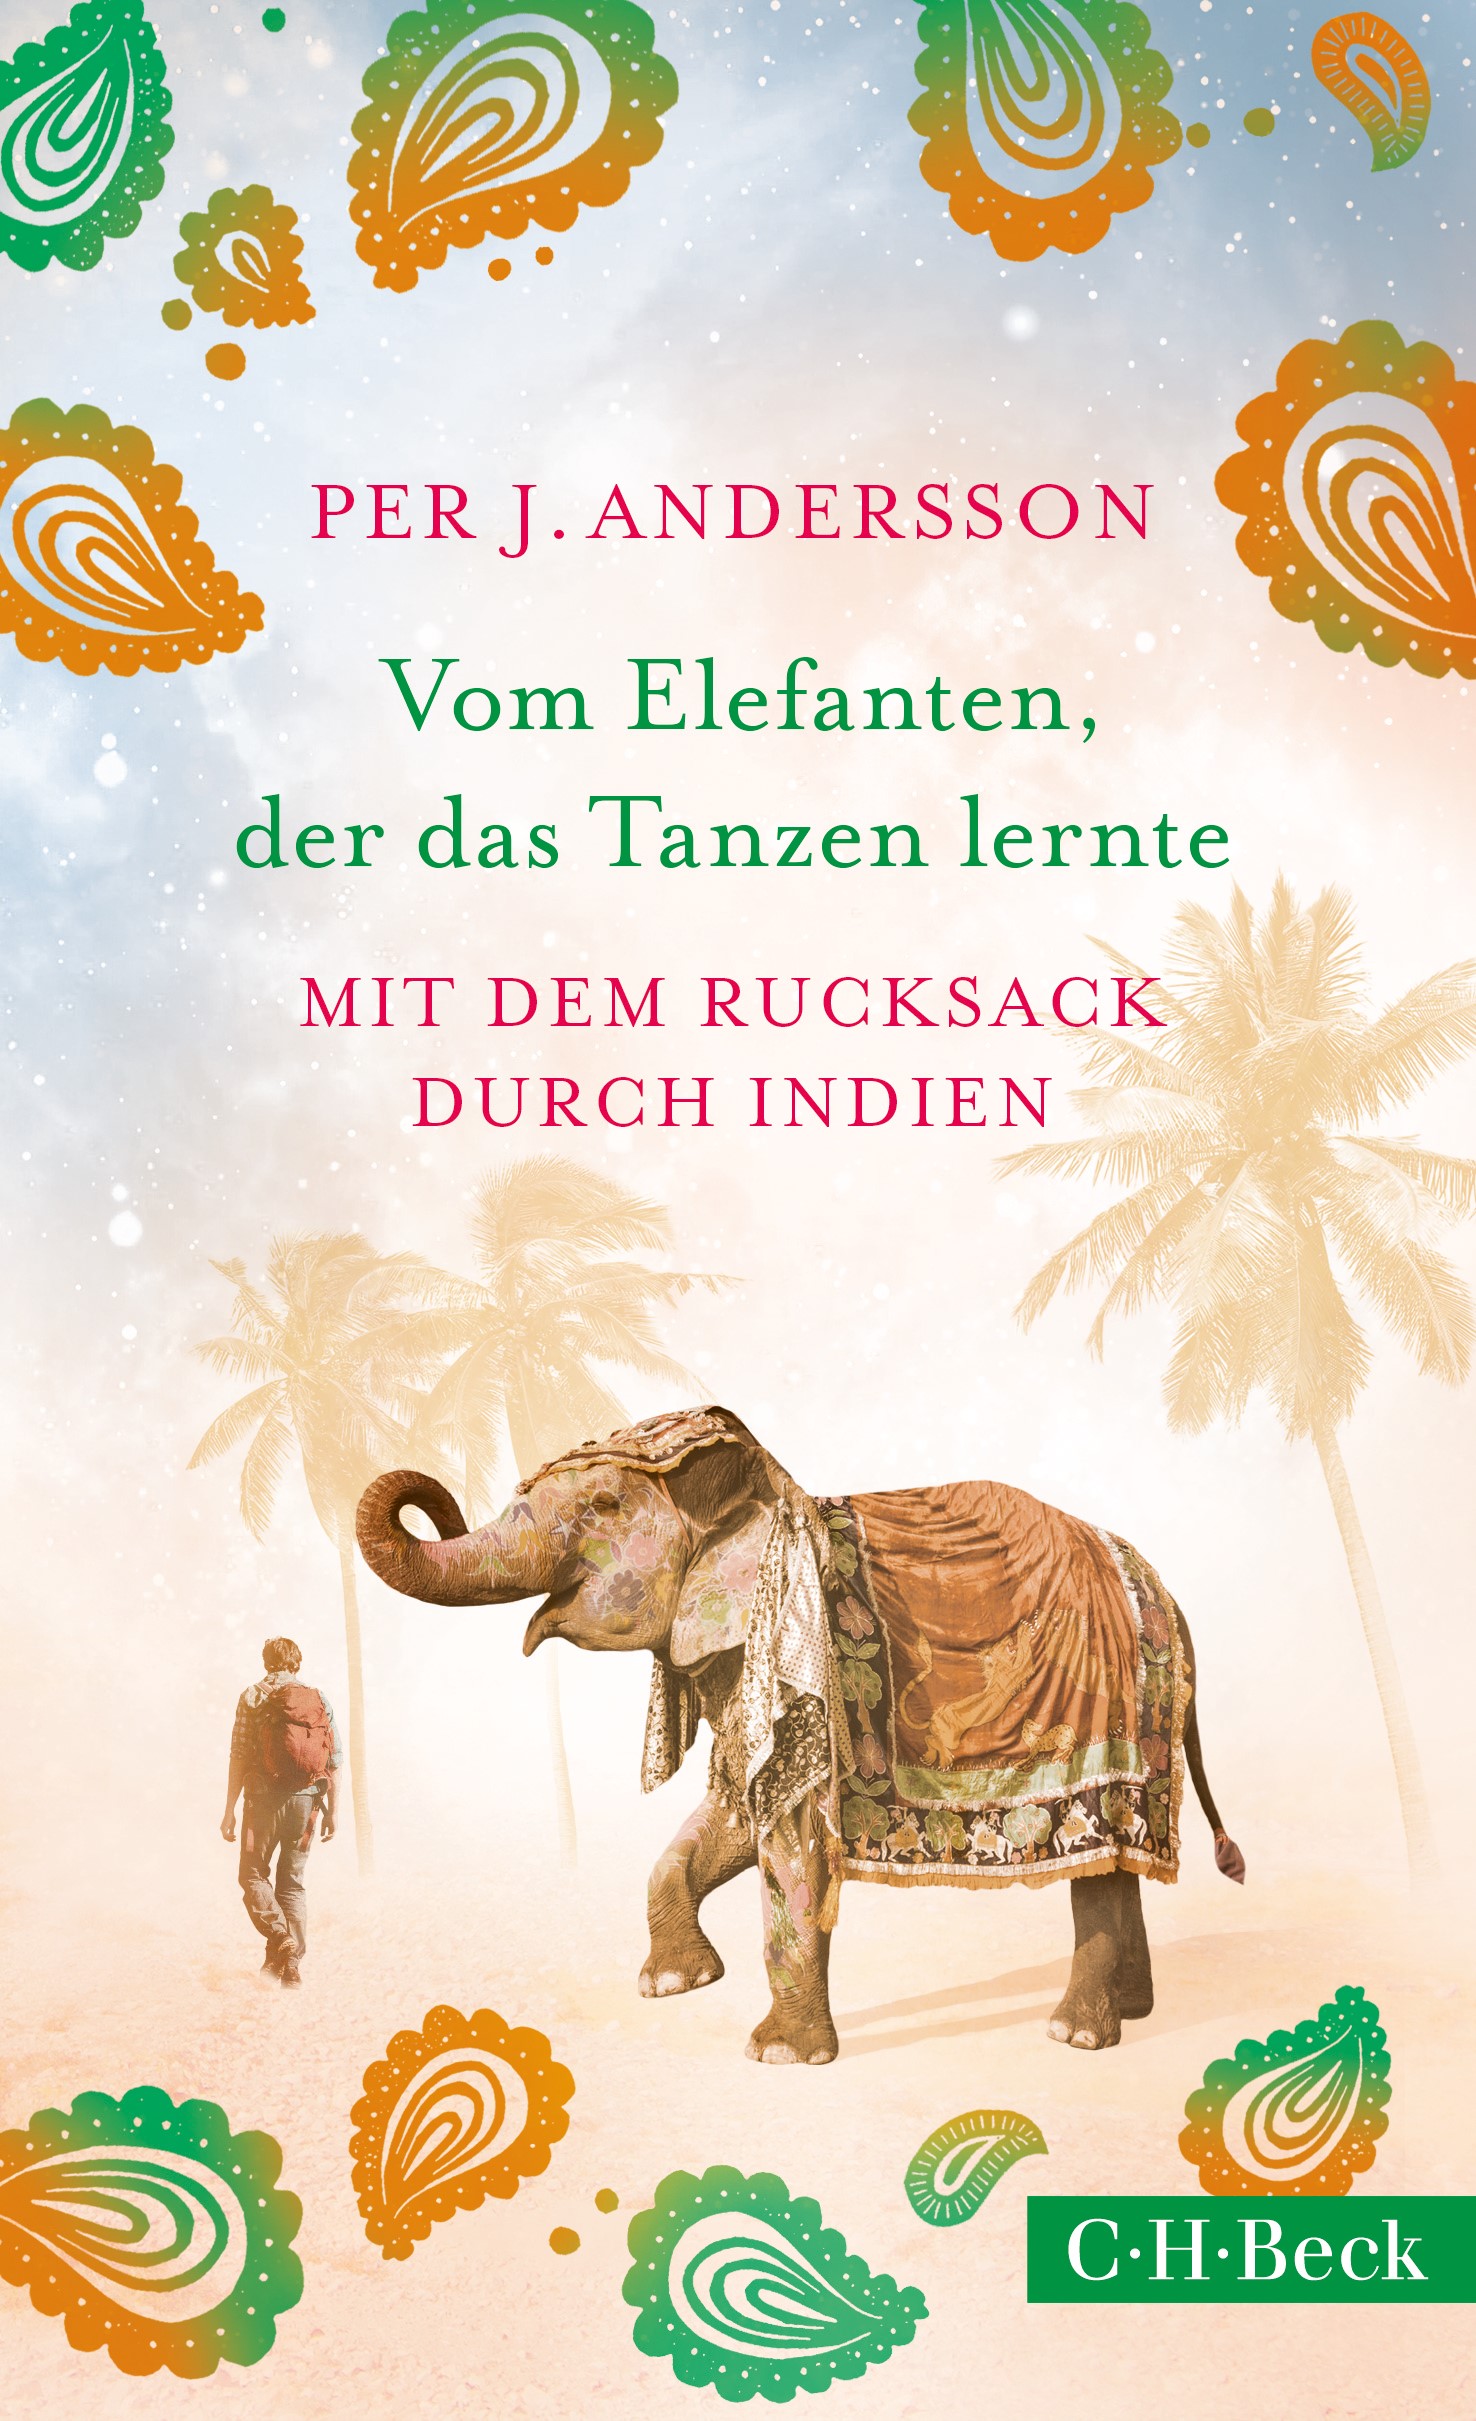 Cover: Andersson, Per J., Vom Elefanten, der das Tanzen lernte